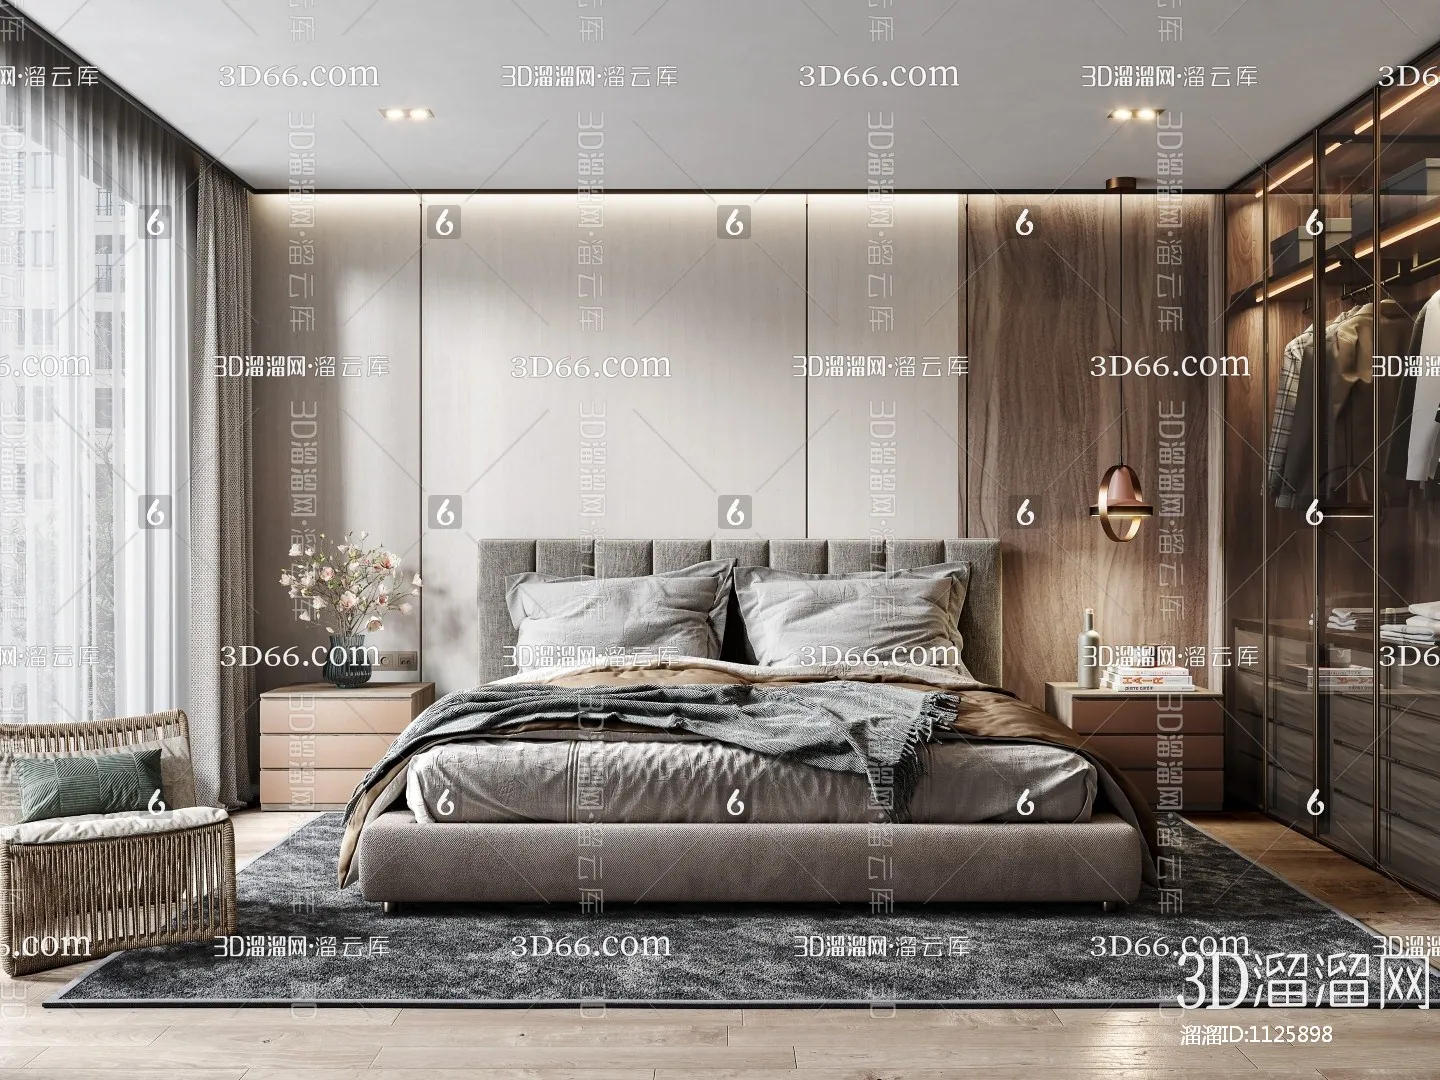 Bedroom 3D Scenes – 0184